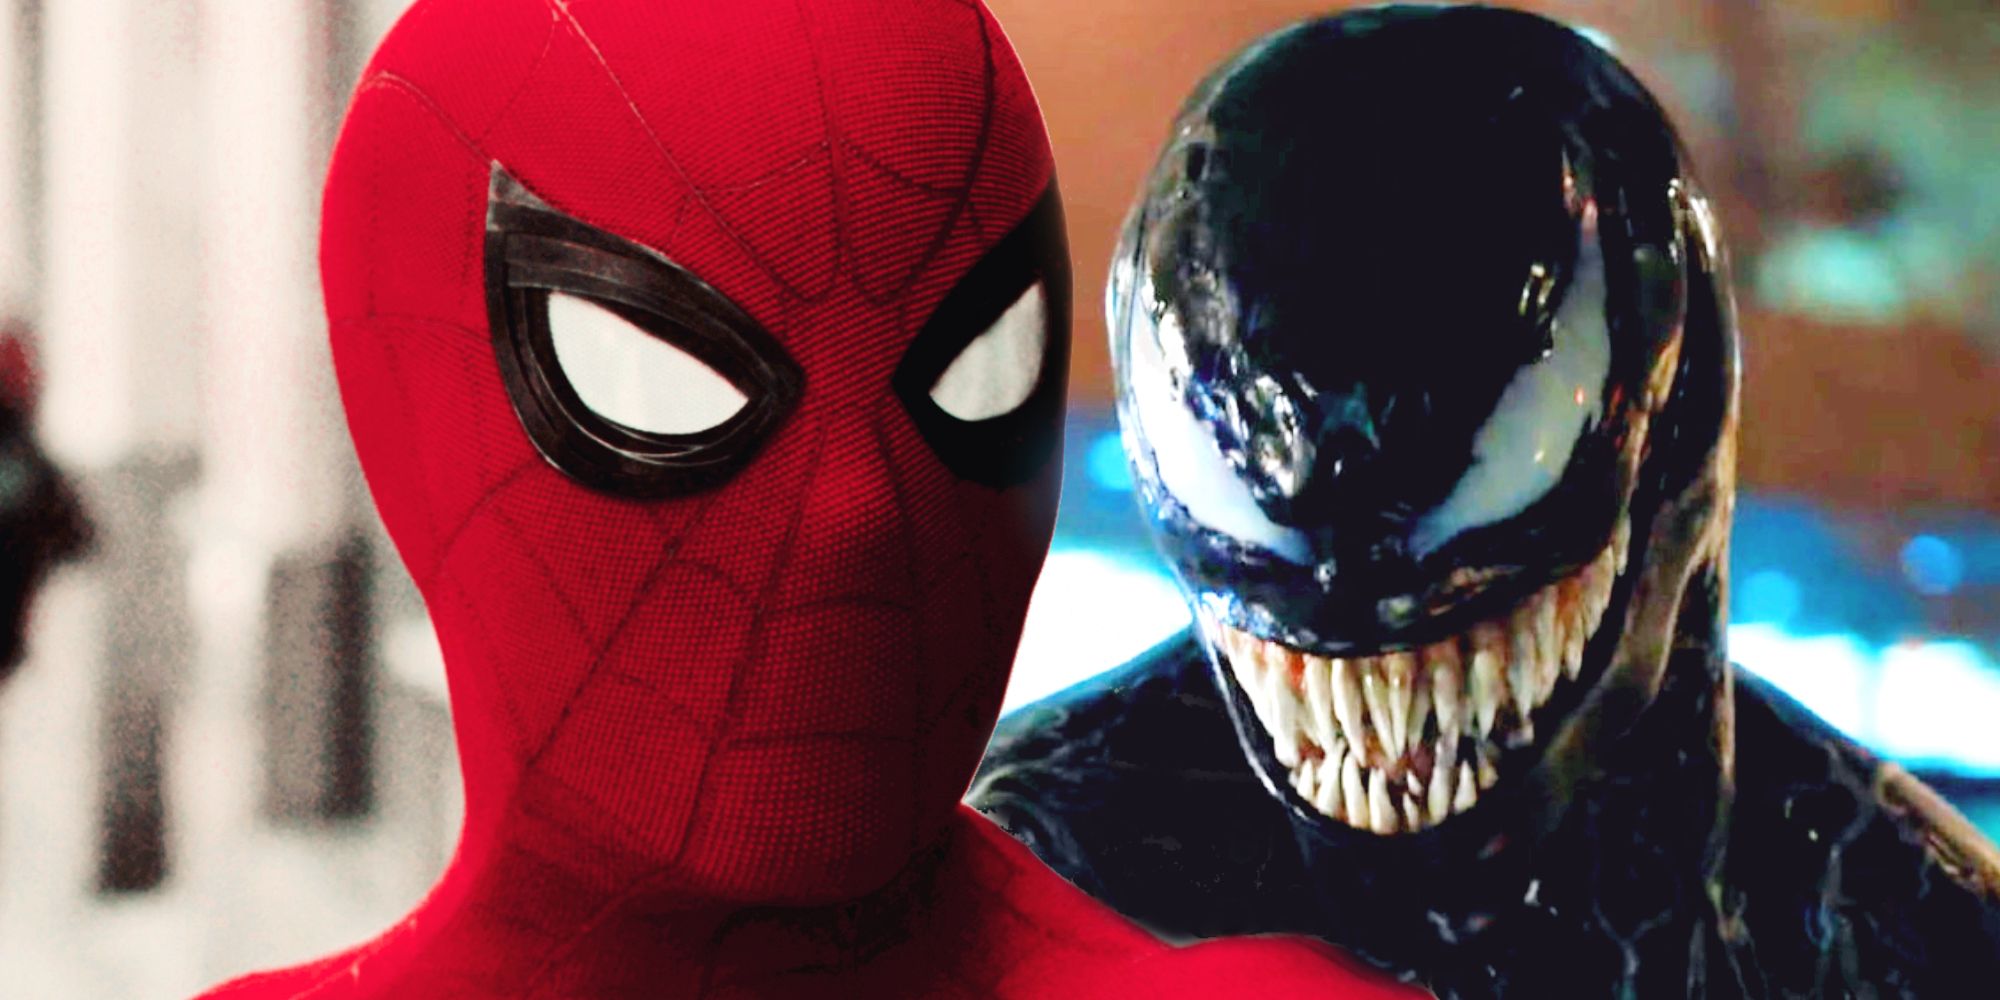 Film Crossover Venom/Spider-Man by zmeškal obrovskou část jejich příběhu